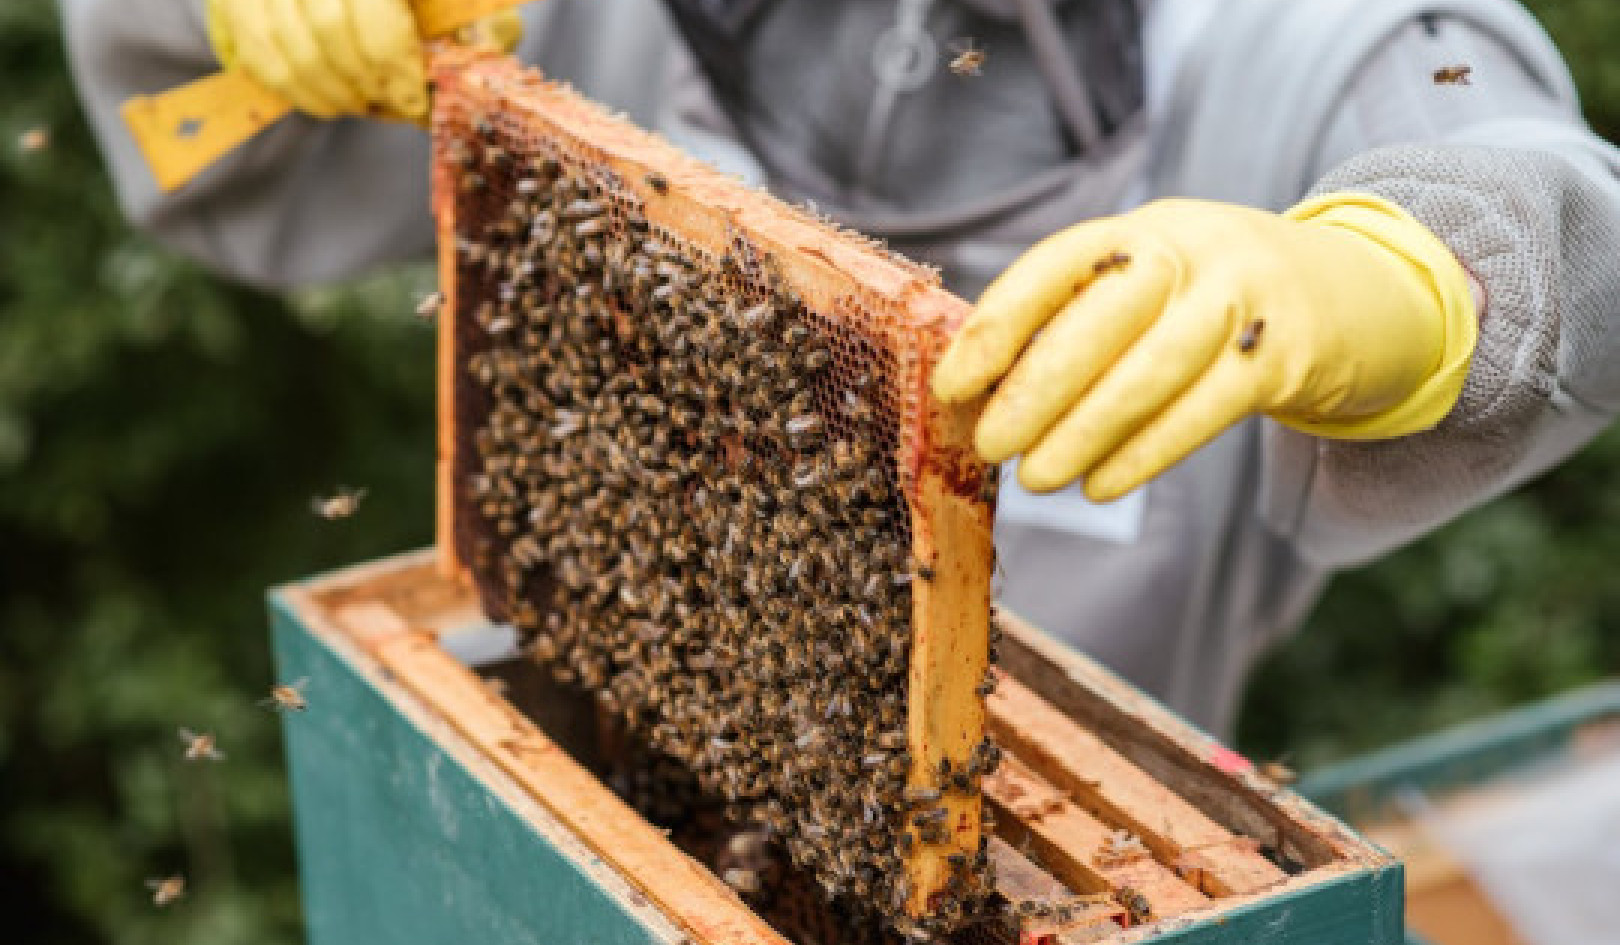 น้ำผึ้งของคุณเป็นของแท้หรือไม่? 10 การทดสอบที่บ้านเพื่อตรวจสอบความบริสุทธิ์